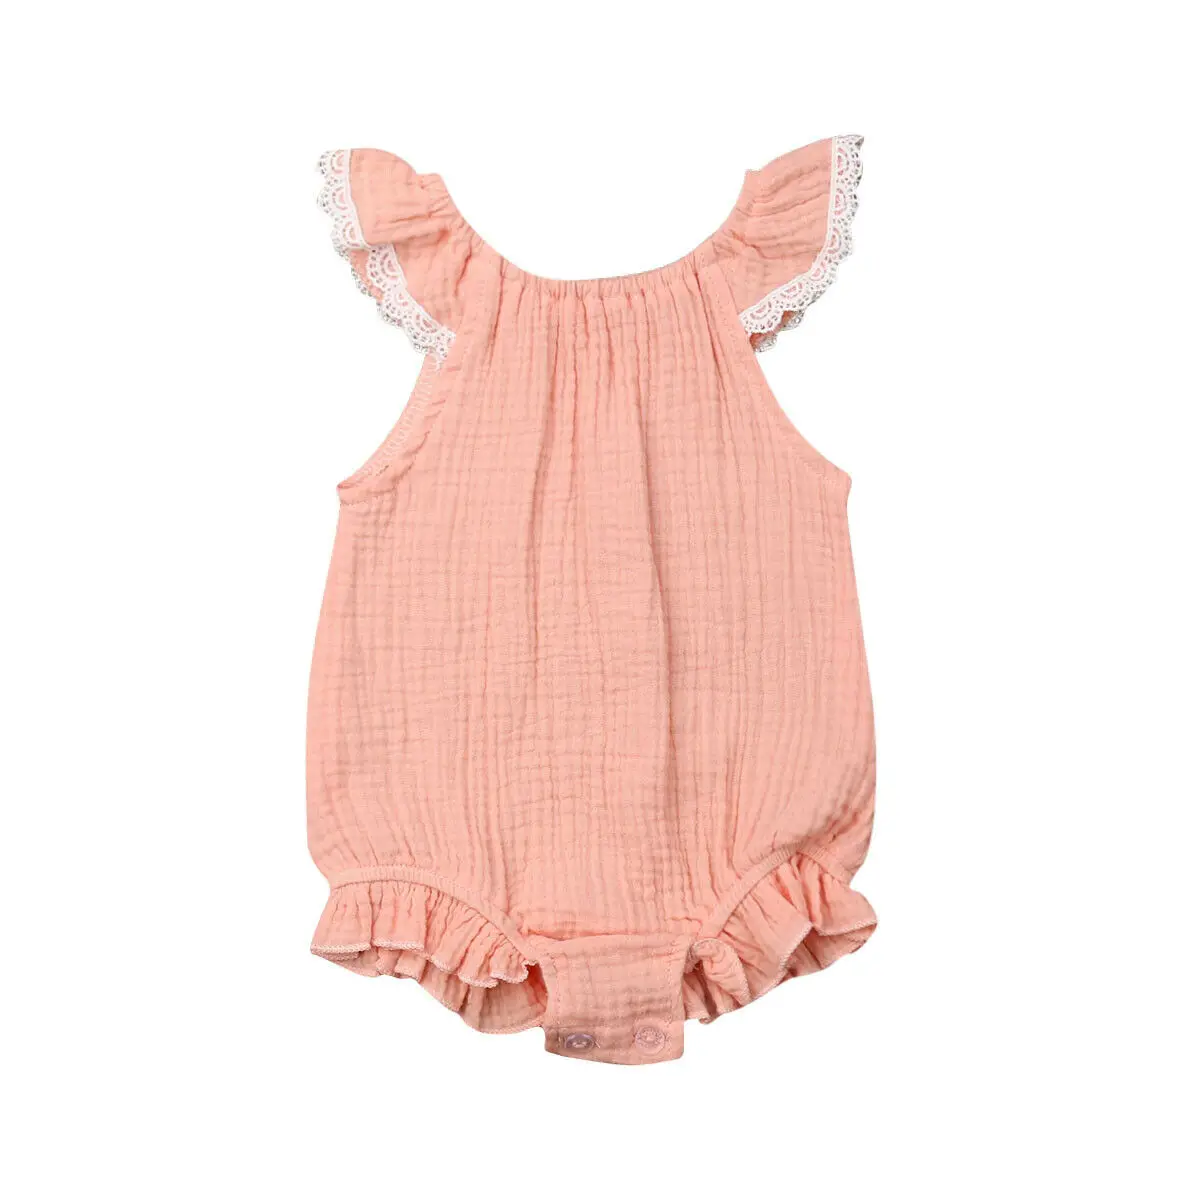 Цельный кружевной комбинезон с короткими рукавами и рюшами для новорожденных девочек, комбинезон, летний костюм, летняя одежда, однотонная мягкая одежда - Цвет: Розовый